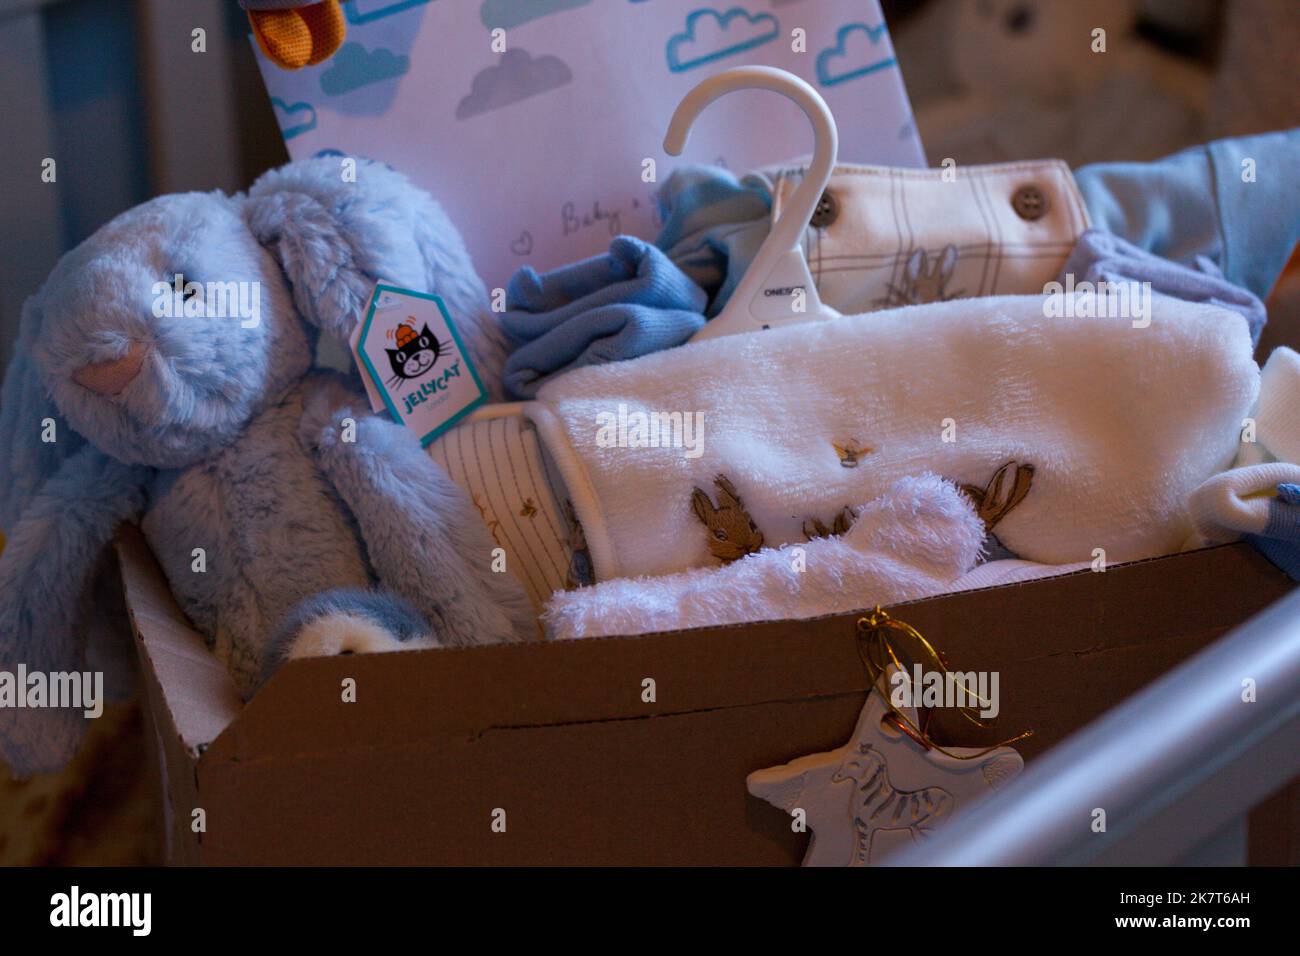 Babygeschenkkonzept und verpacktes Zubehör für neugeborene Jungen. Geschenkbox mit Decke, Kleidung, Socken, Schuhen und blauem Plüschhase. Babydusche. Stockfoto